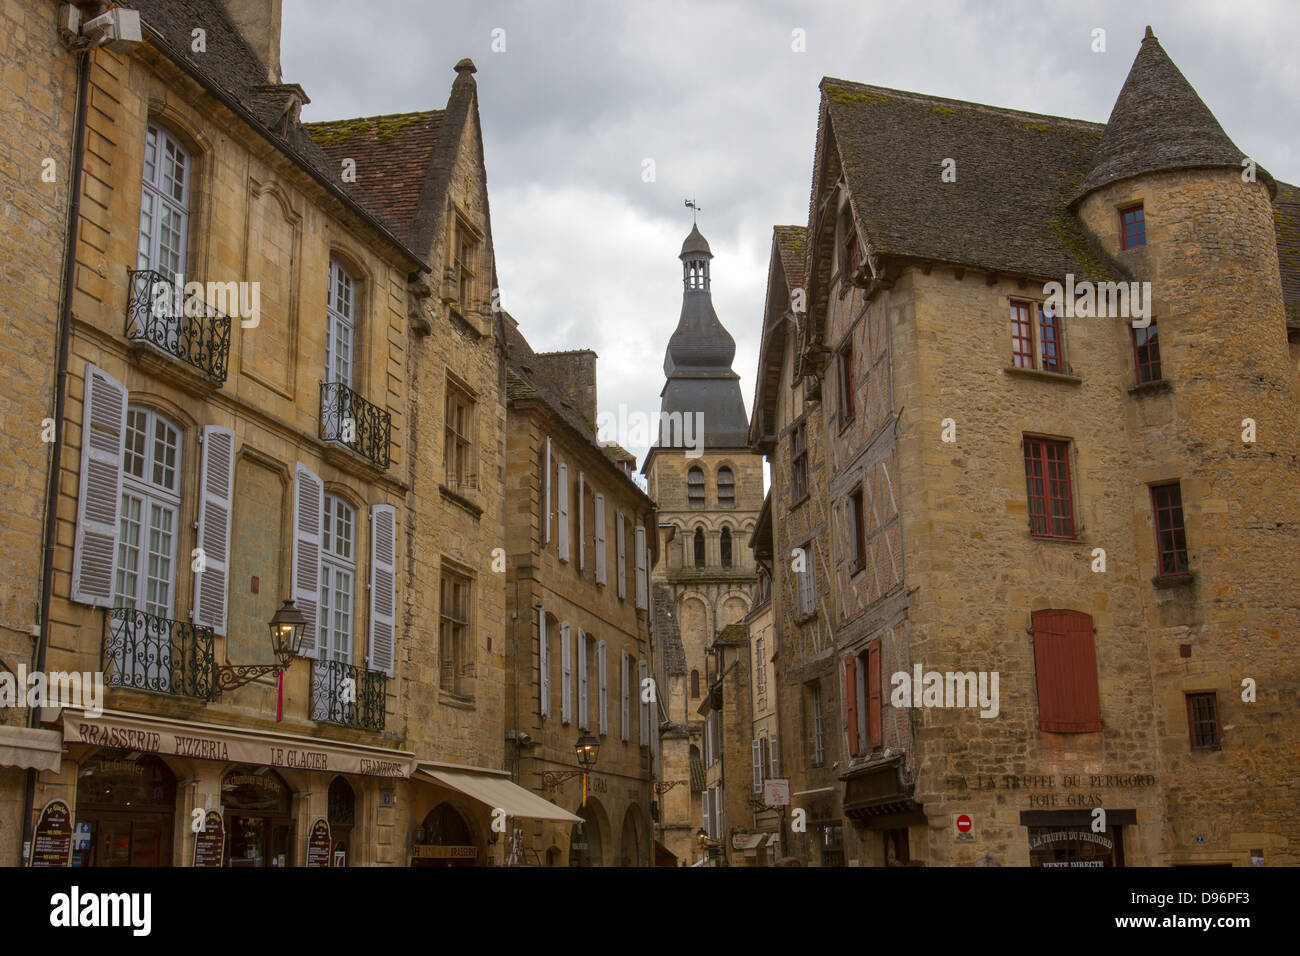 Beaux bâtiments en grès médiévale et clocher de la cathédrale Saint-Sacerdos de Sarlat, Dordogne charmante région de France Banque D'Images